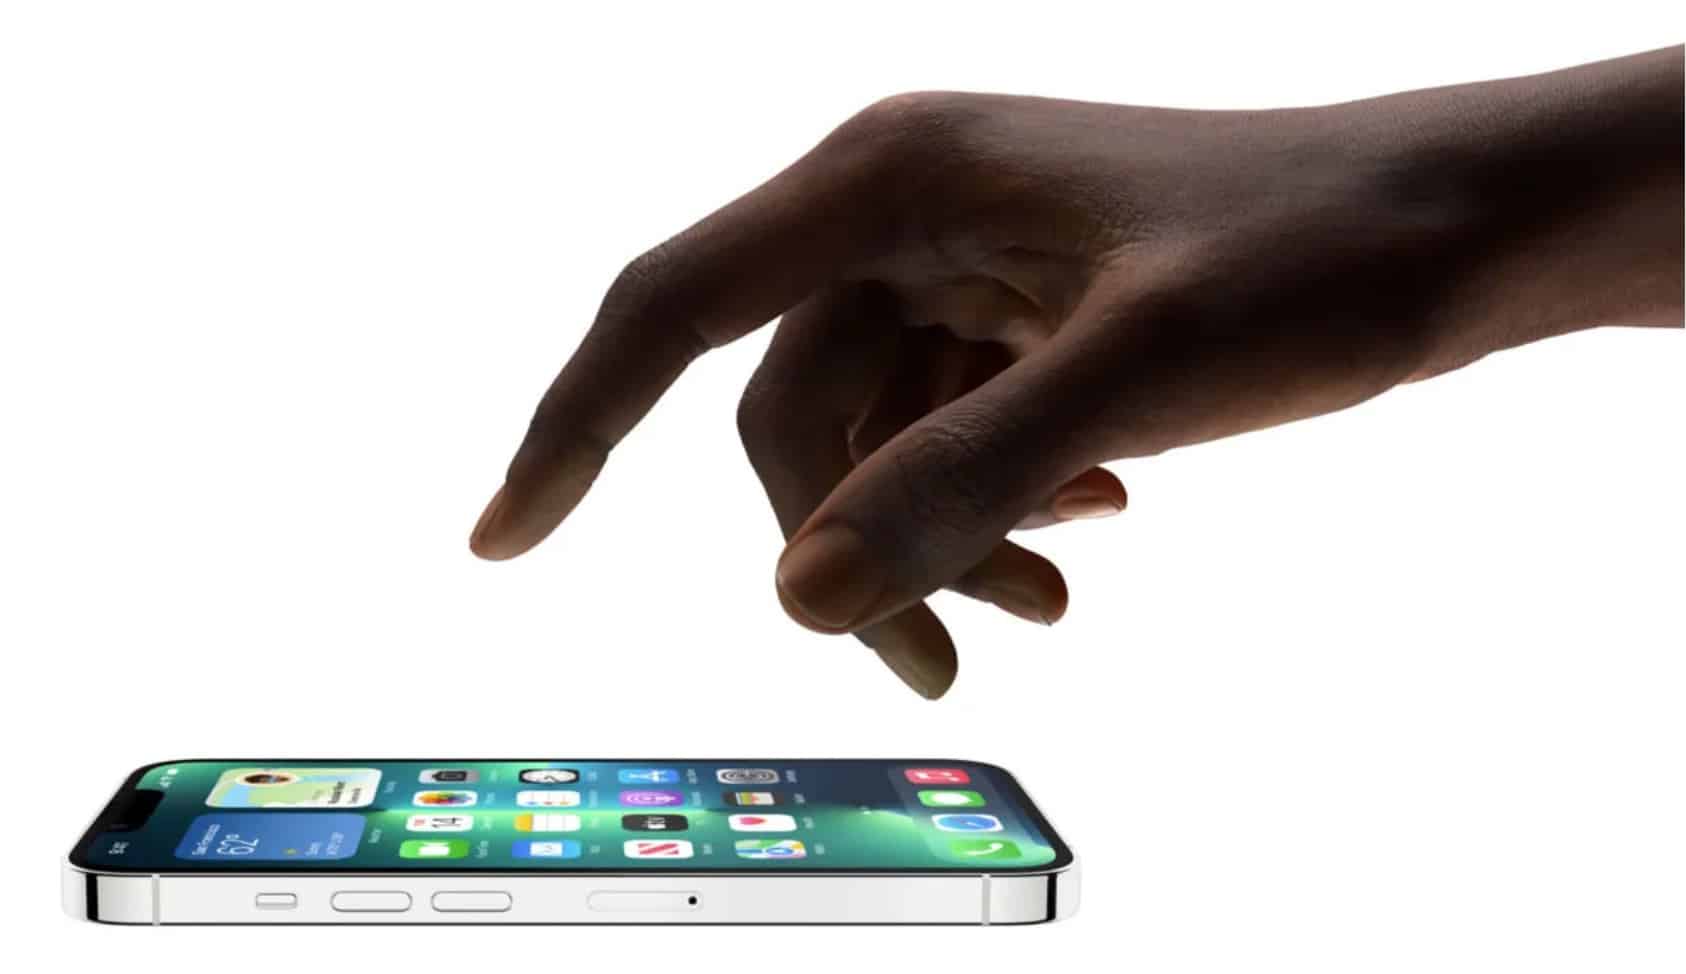 Сообщается, что Apple тестирует несколько прототипов iPhone со складными экранами, но все еще настроена скептически.